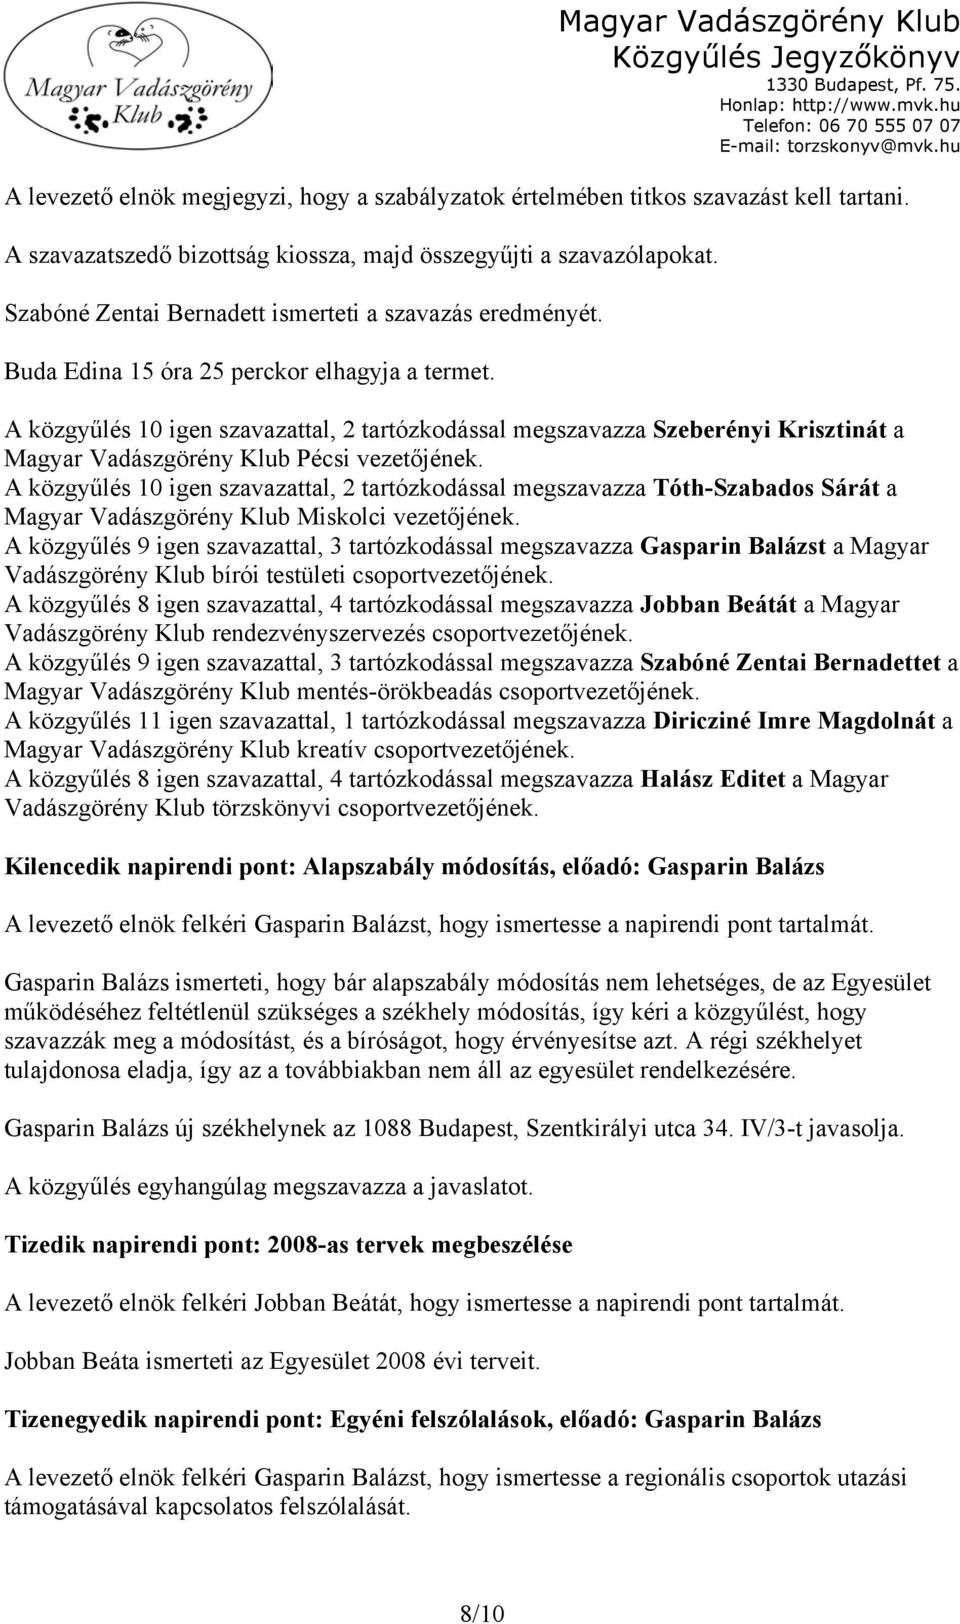 A közgyűlés 10 igen szavazattal, 2 tartózkodással megszavazza Szeberényi Krisztinát a Magyar Vadászgörény Klub Pécsi vezetőjének.